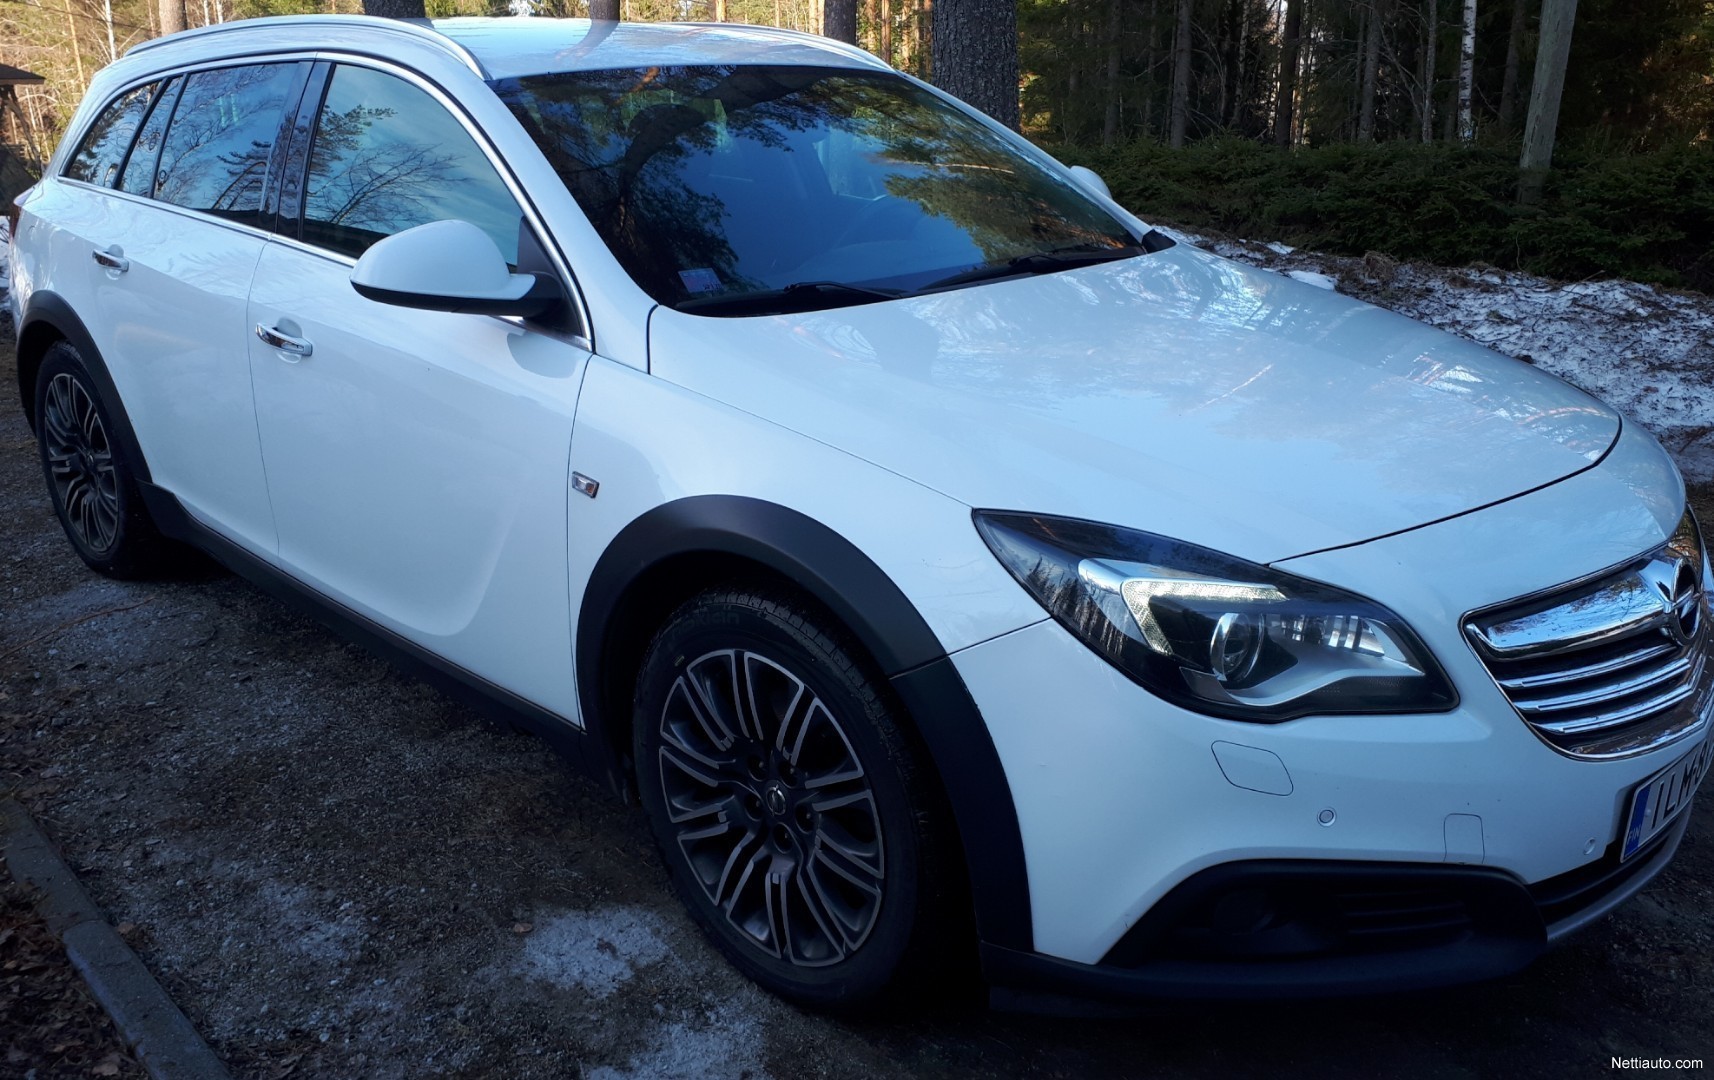 Opel Insignia kokemuksia - Lue käyttäjien autoarvostelut - Nettiauto